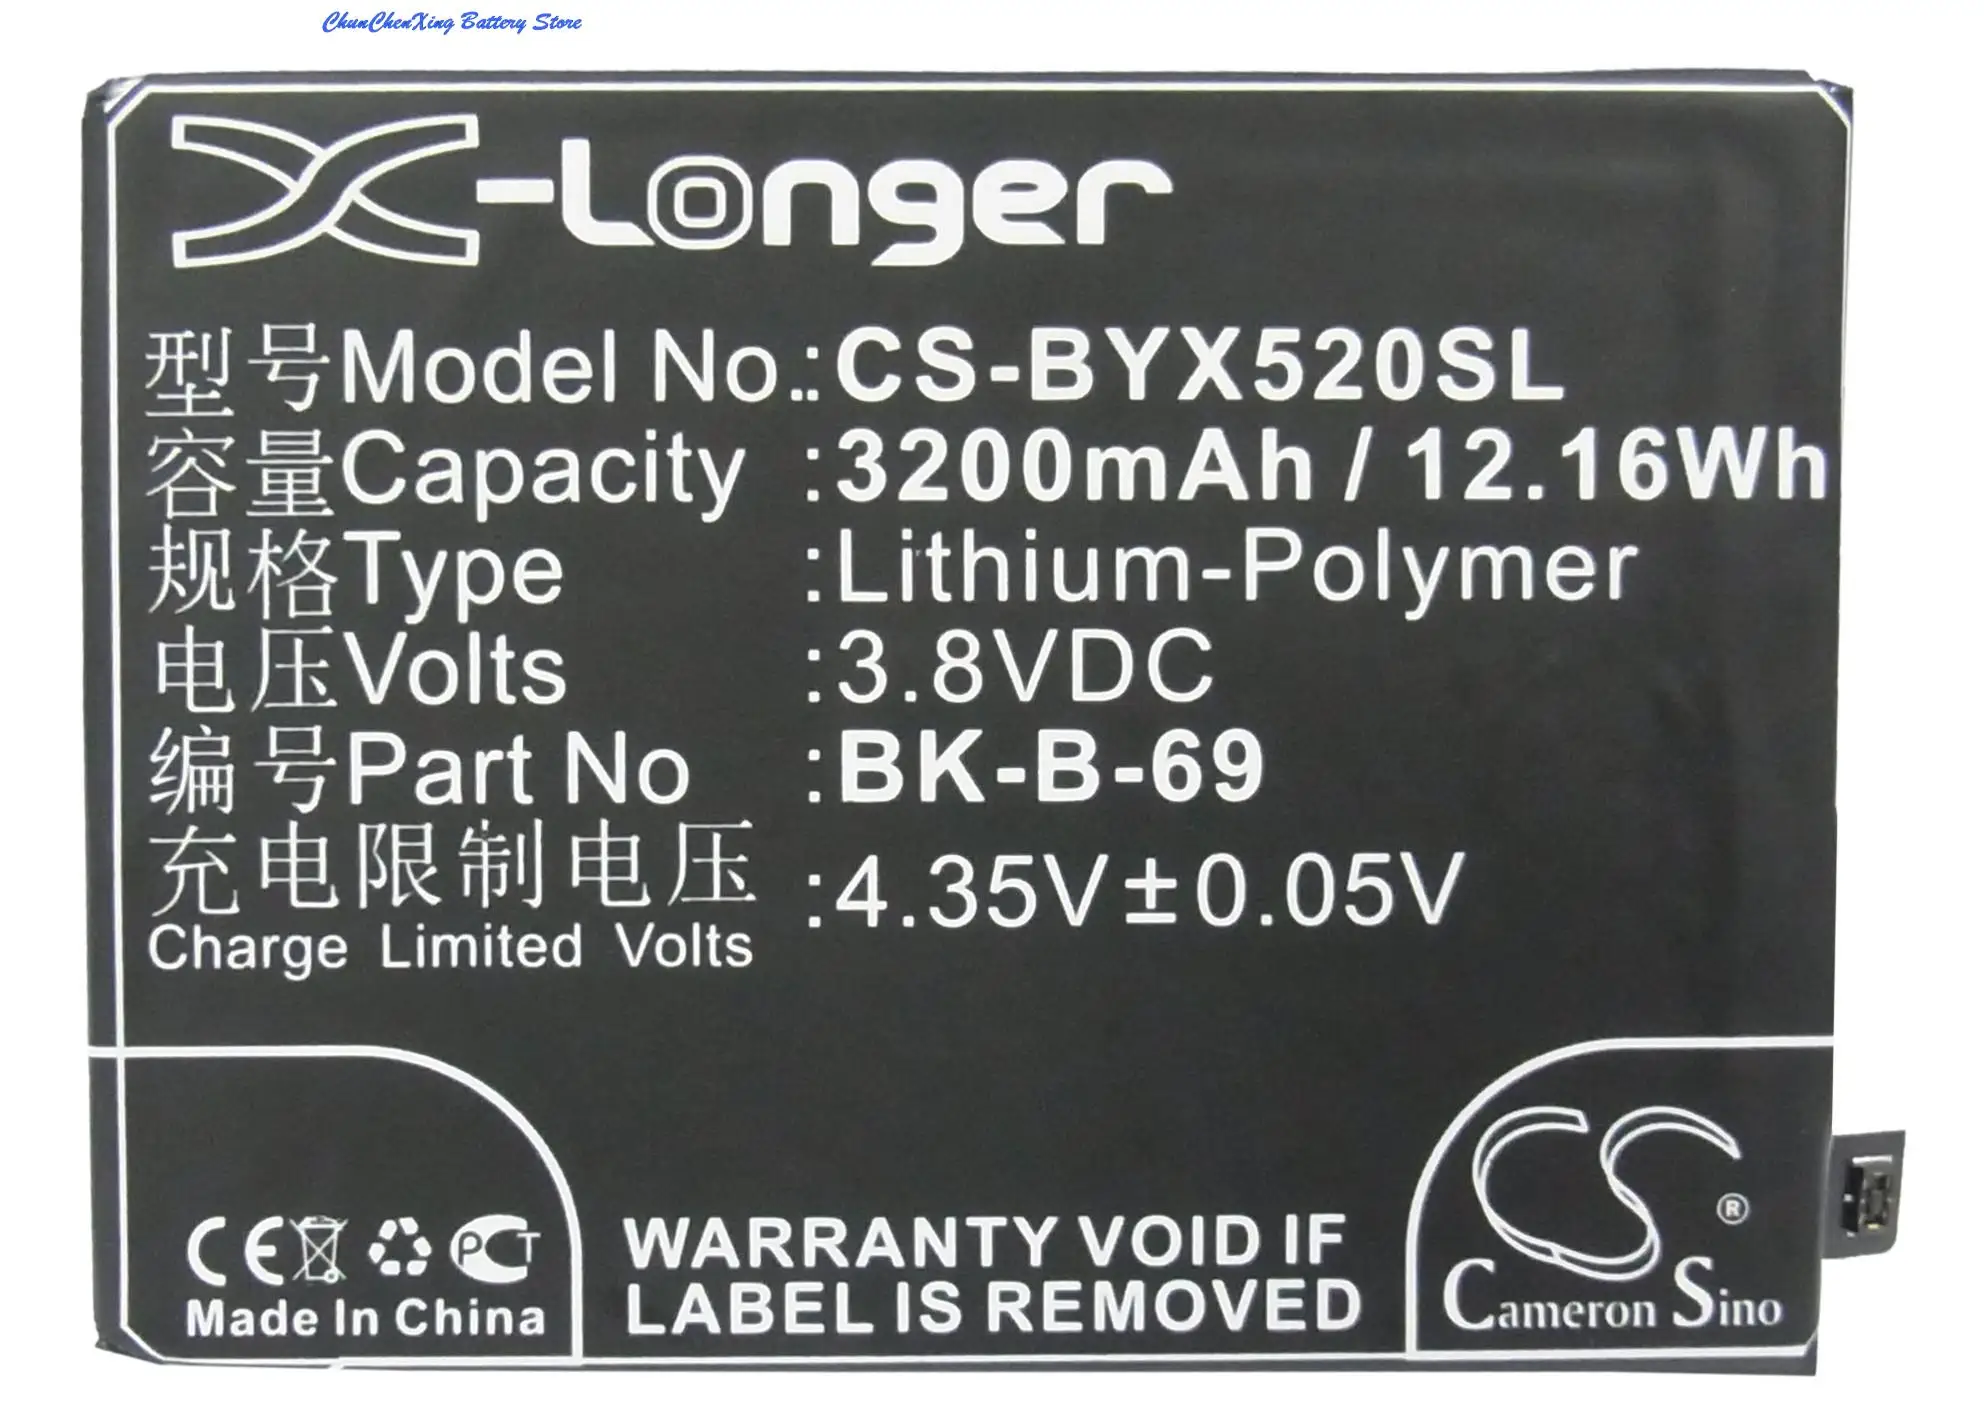 

Cameron Sino High Quality 3200mAh Battery BK-B-69 for BBK Xplay 3S, Xplay X520A, Xplay X520L